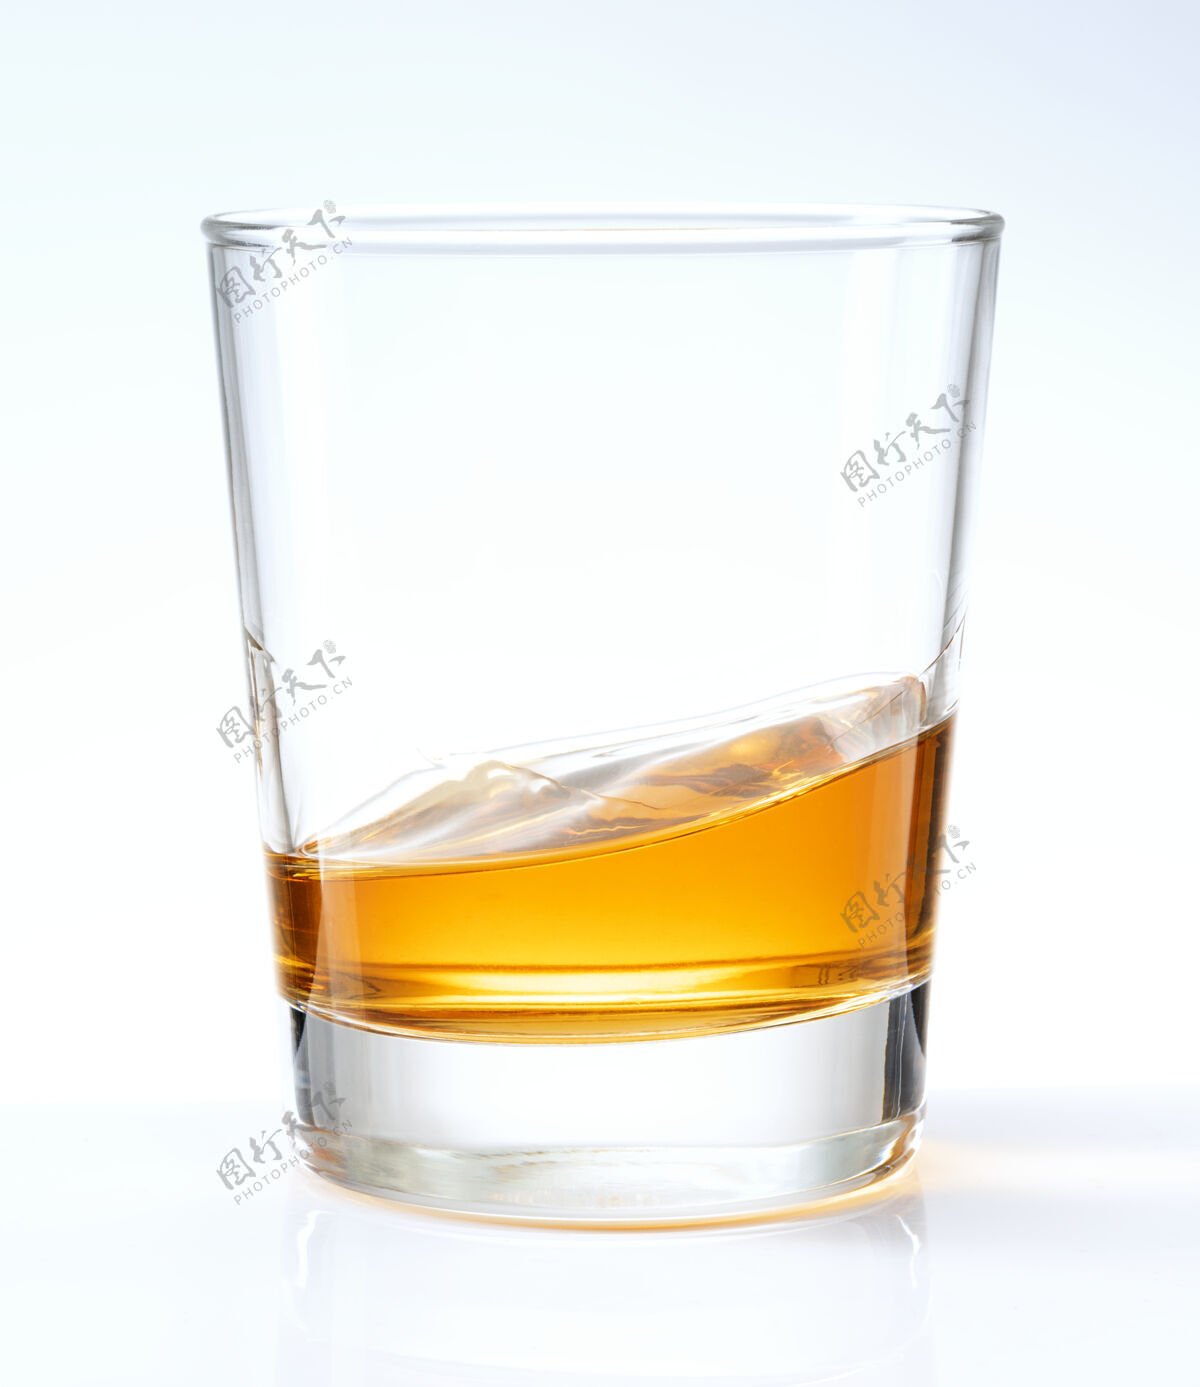 产品威士忌在玻璃杯里端得整整齐齐亮飞溅流